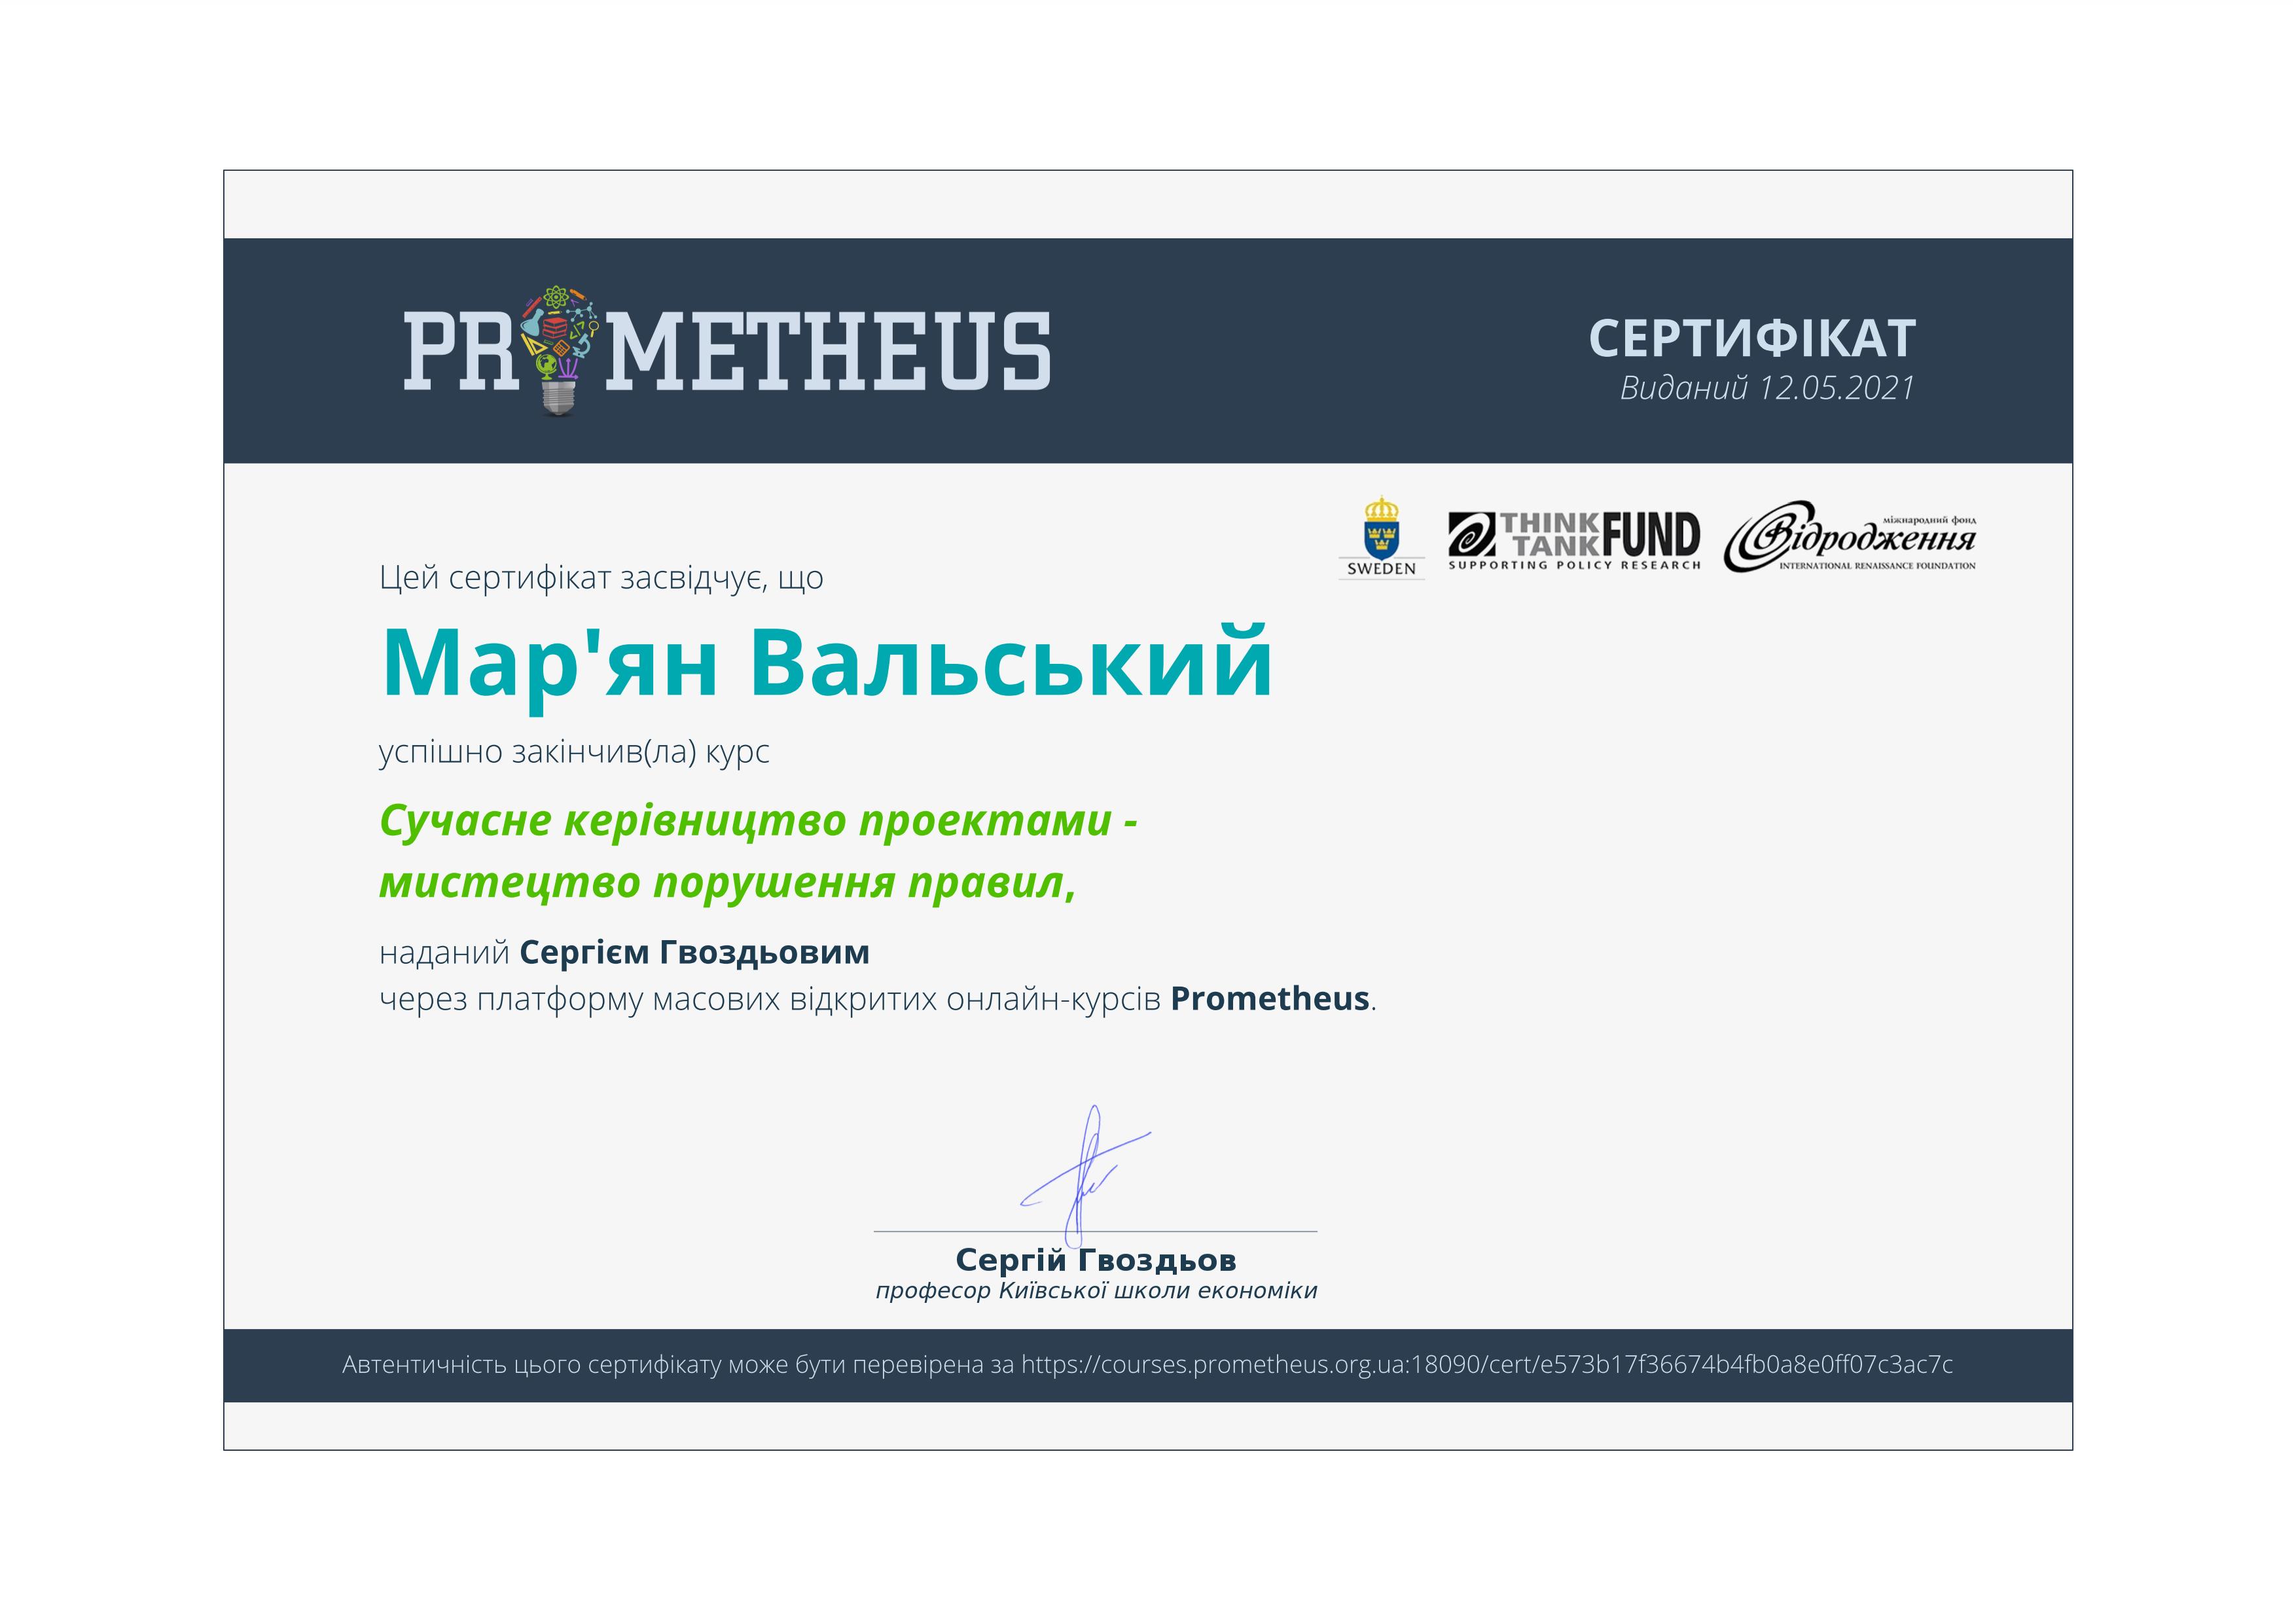 Certificate V 01